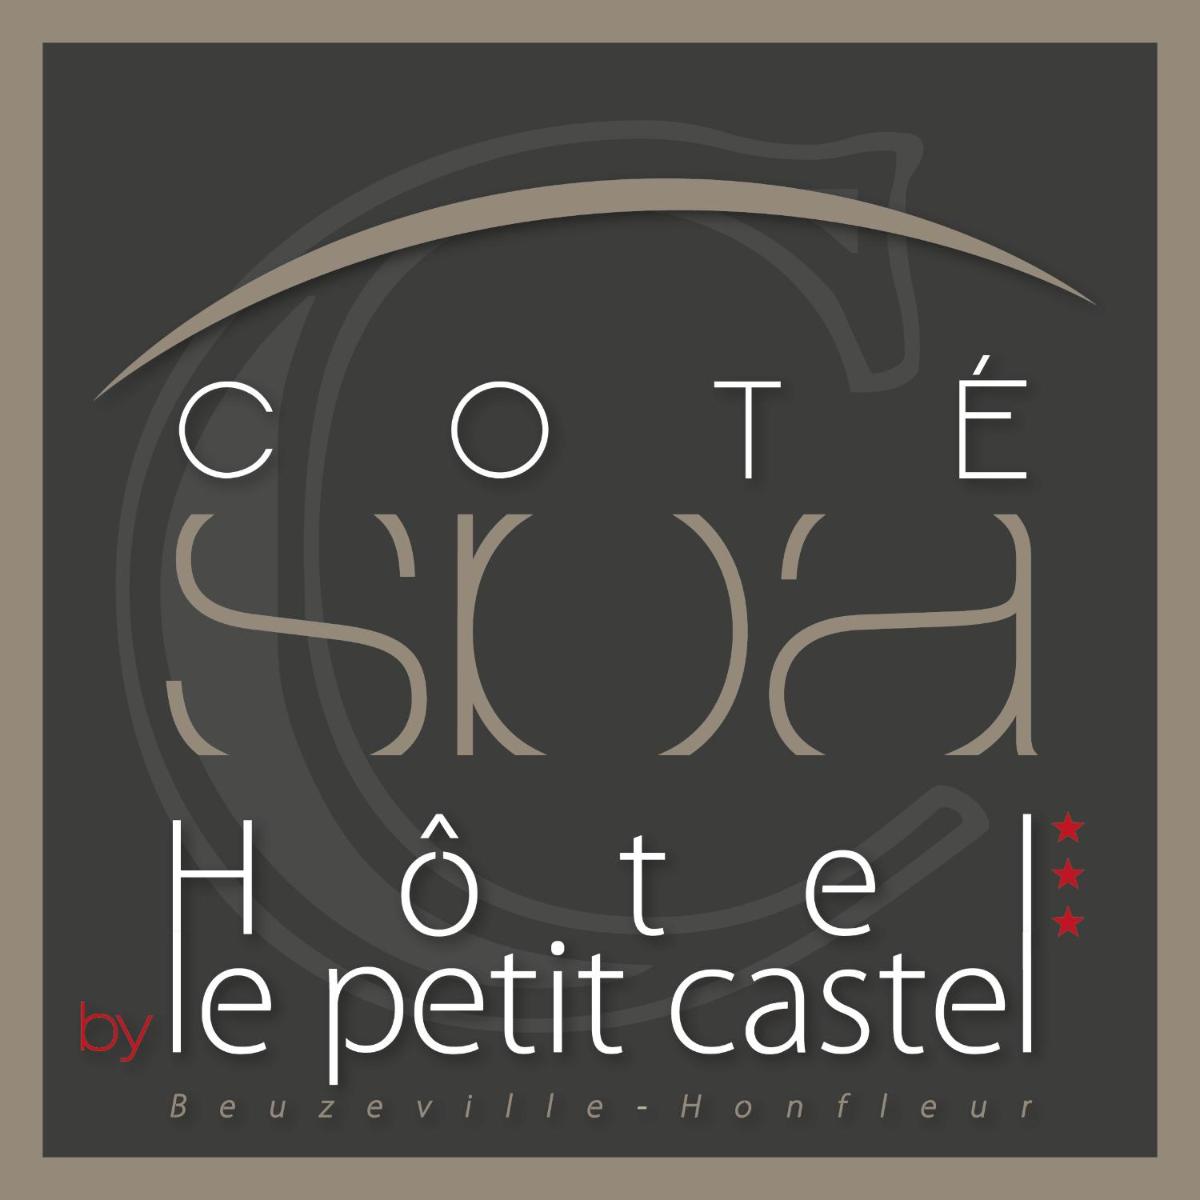 Foto - Hôtel-Spa-Piscine Le Petit Castel Beuzeville-Honfleur